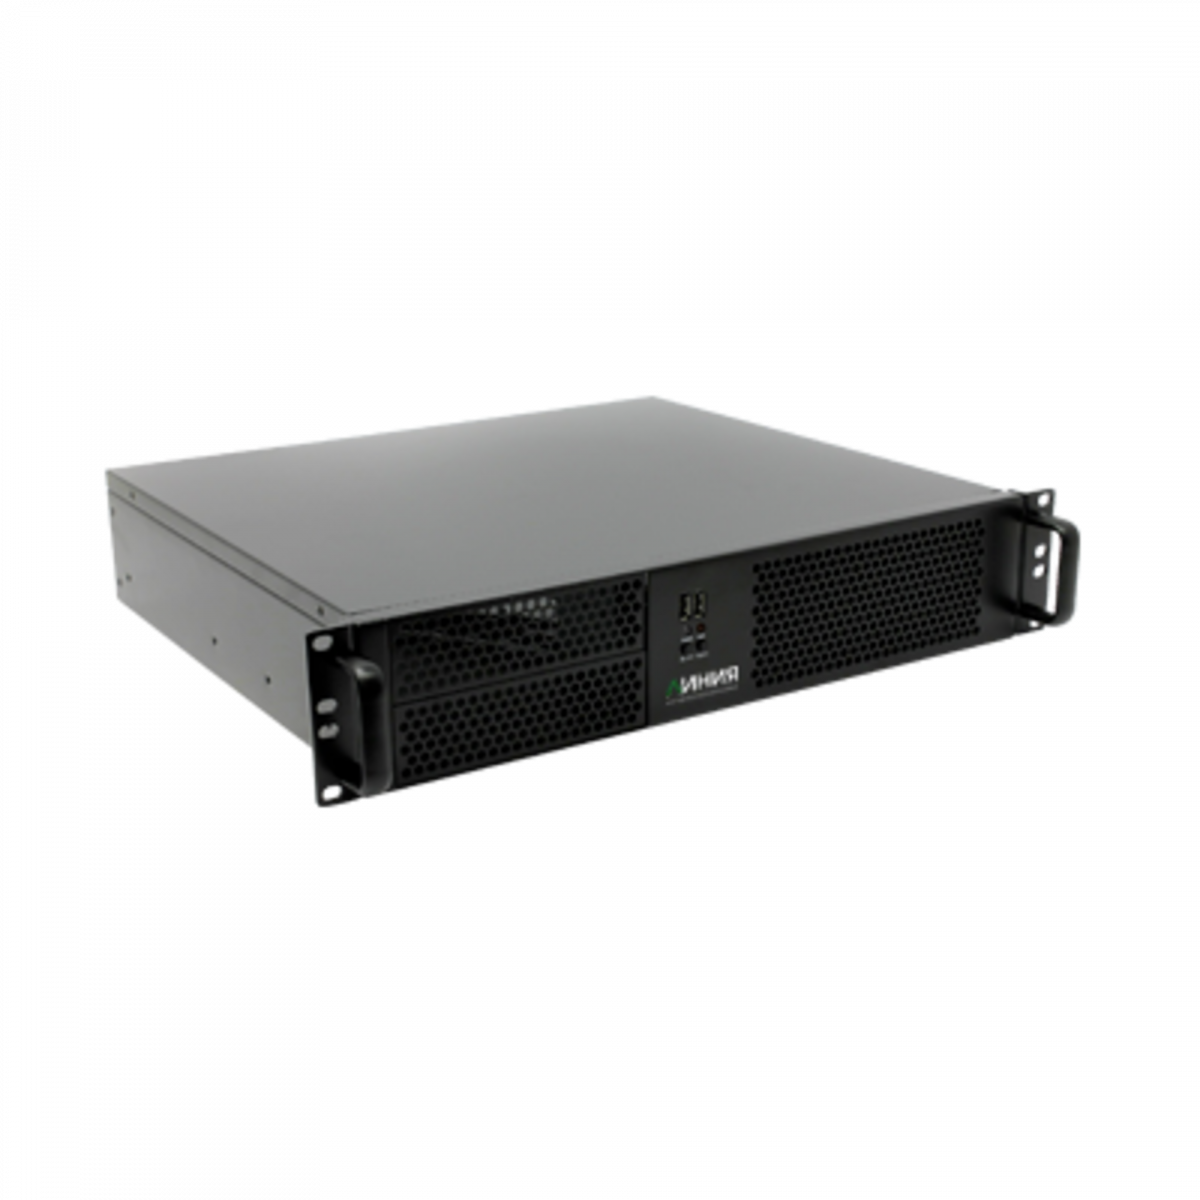 Видеосервер Линия NVR 32-2U Linux для IP-видеокамер. Количество каналов: видео - 32, аудио - 32, до 4 HDD, до 2 мониторов